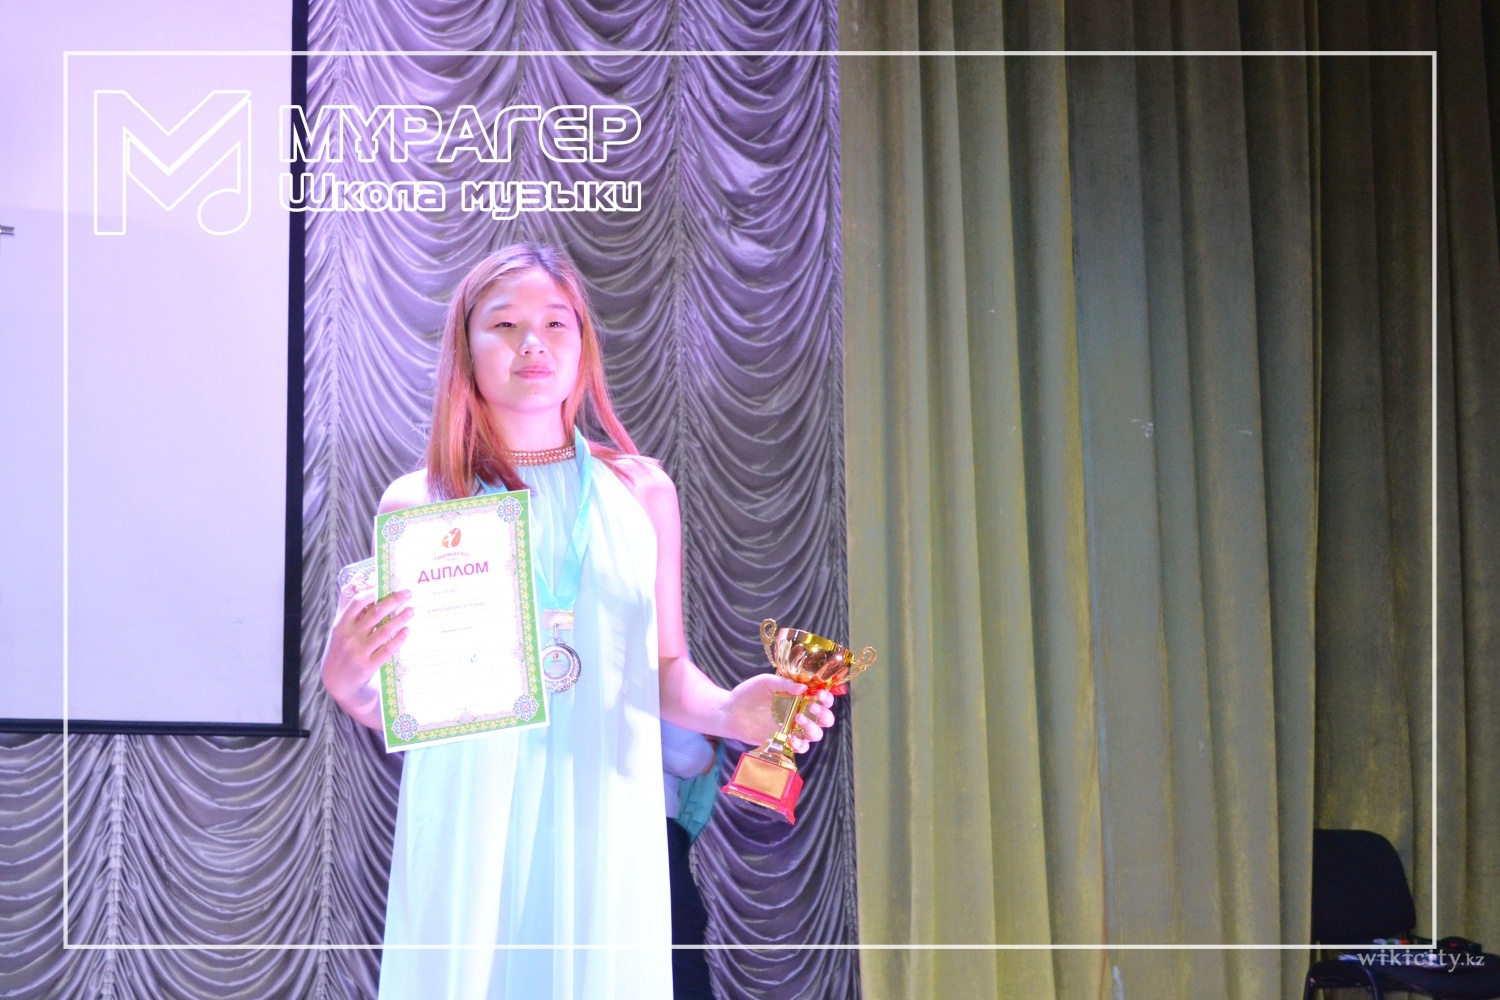 Фото Murager Music School - Алматы. Наши победители Гран-при в  международном конкурсе по вокалу